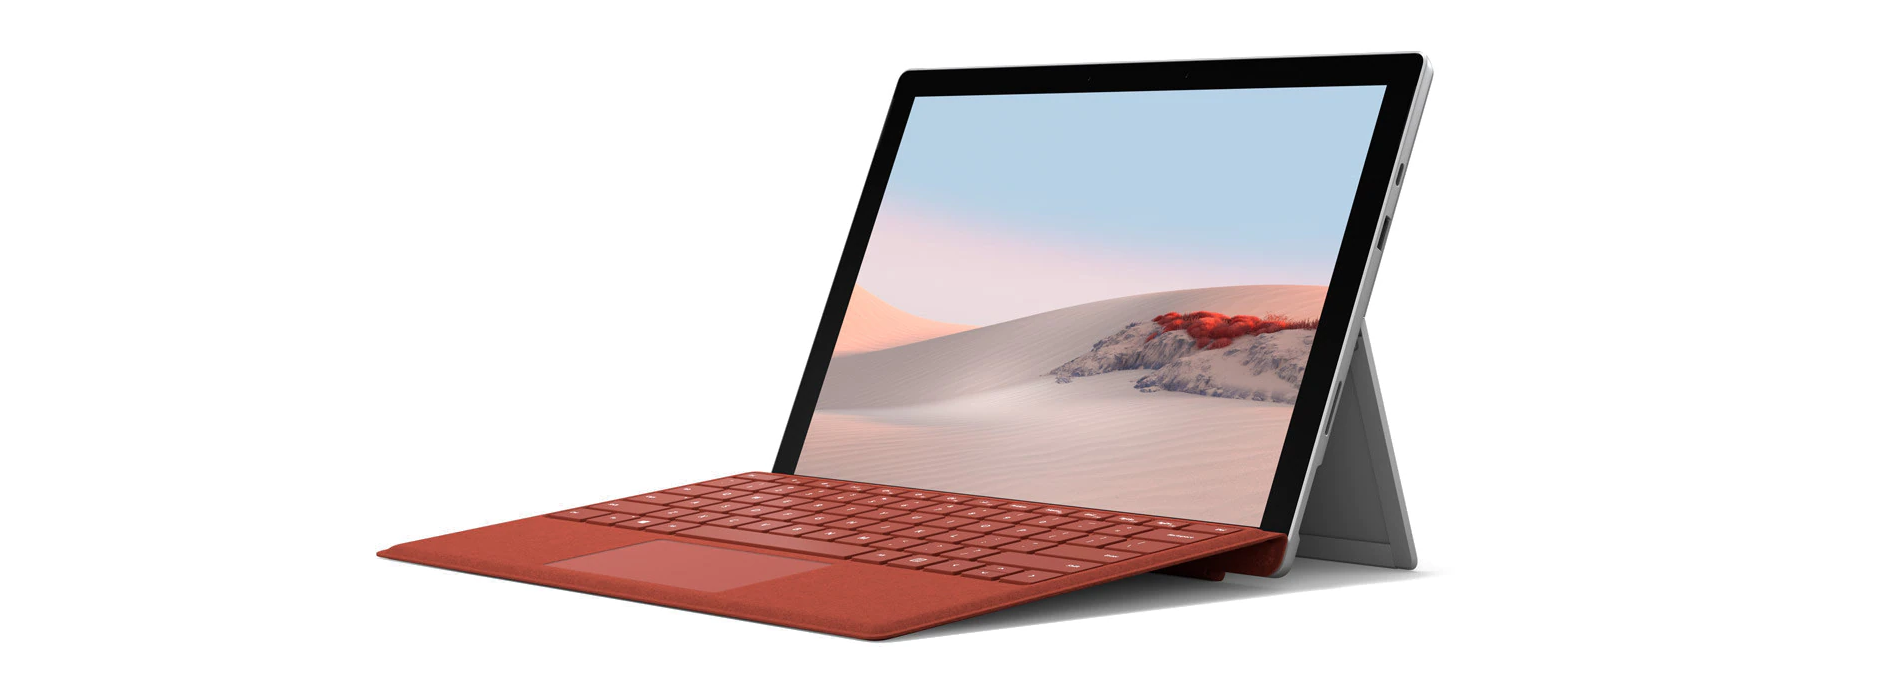 لپ تاپ های سری Surface Pro7